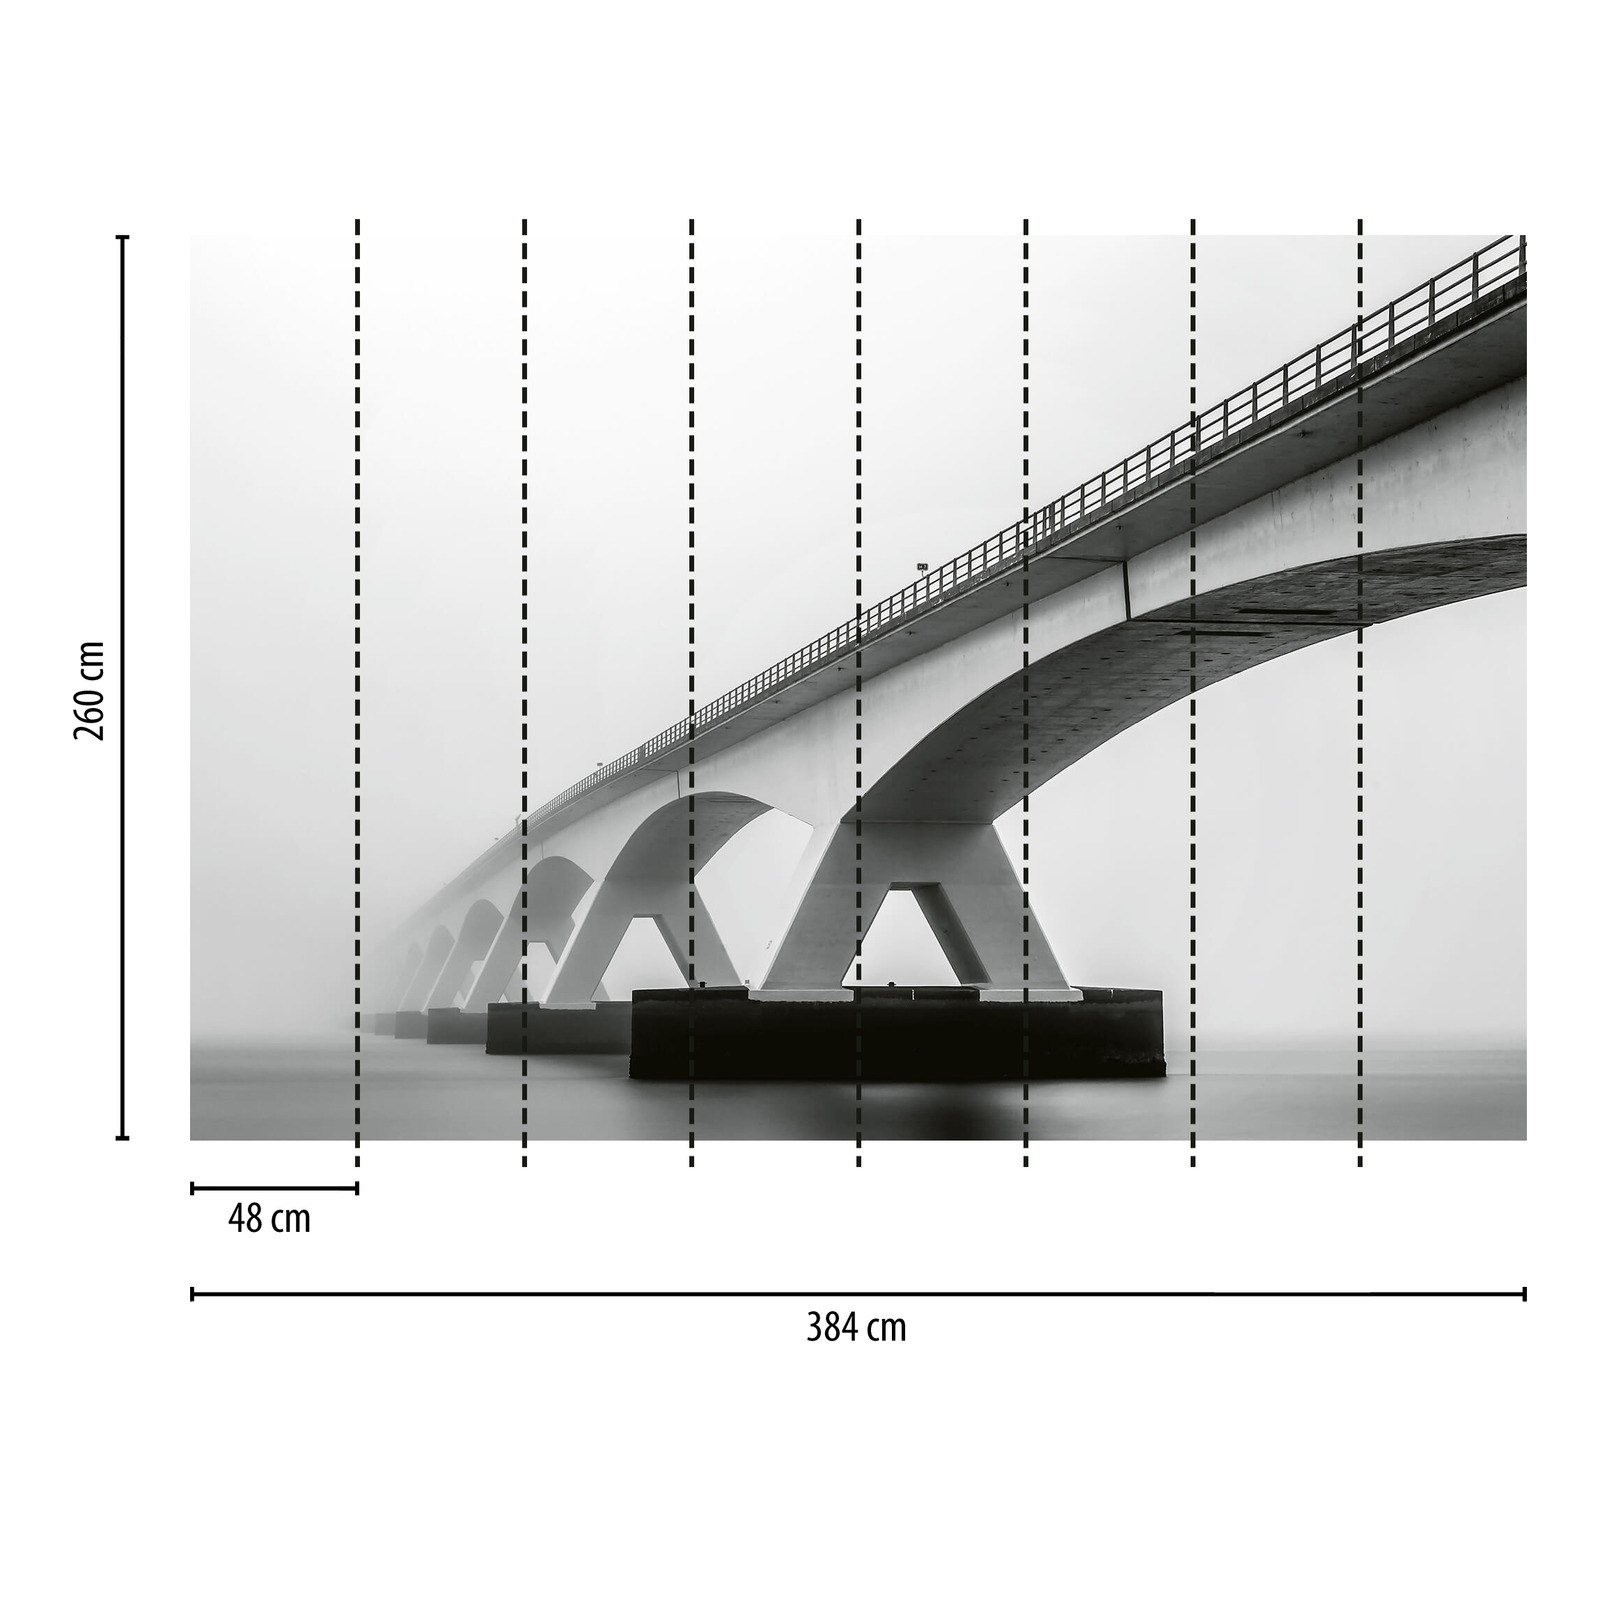             Fototapete Brücke im Nebel – Grau, Weiß, Schwarz
        